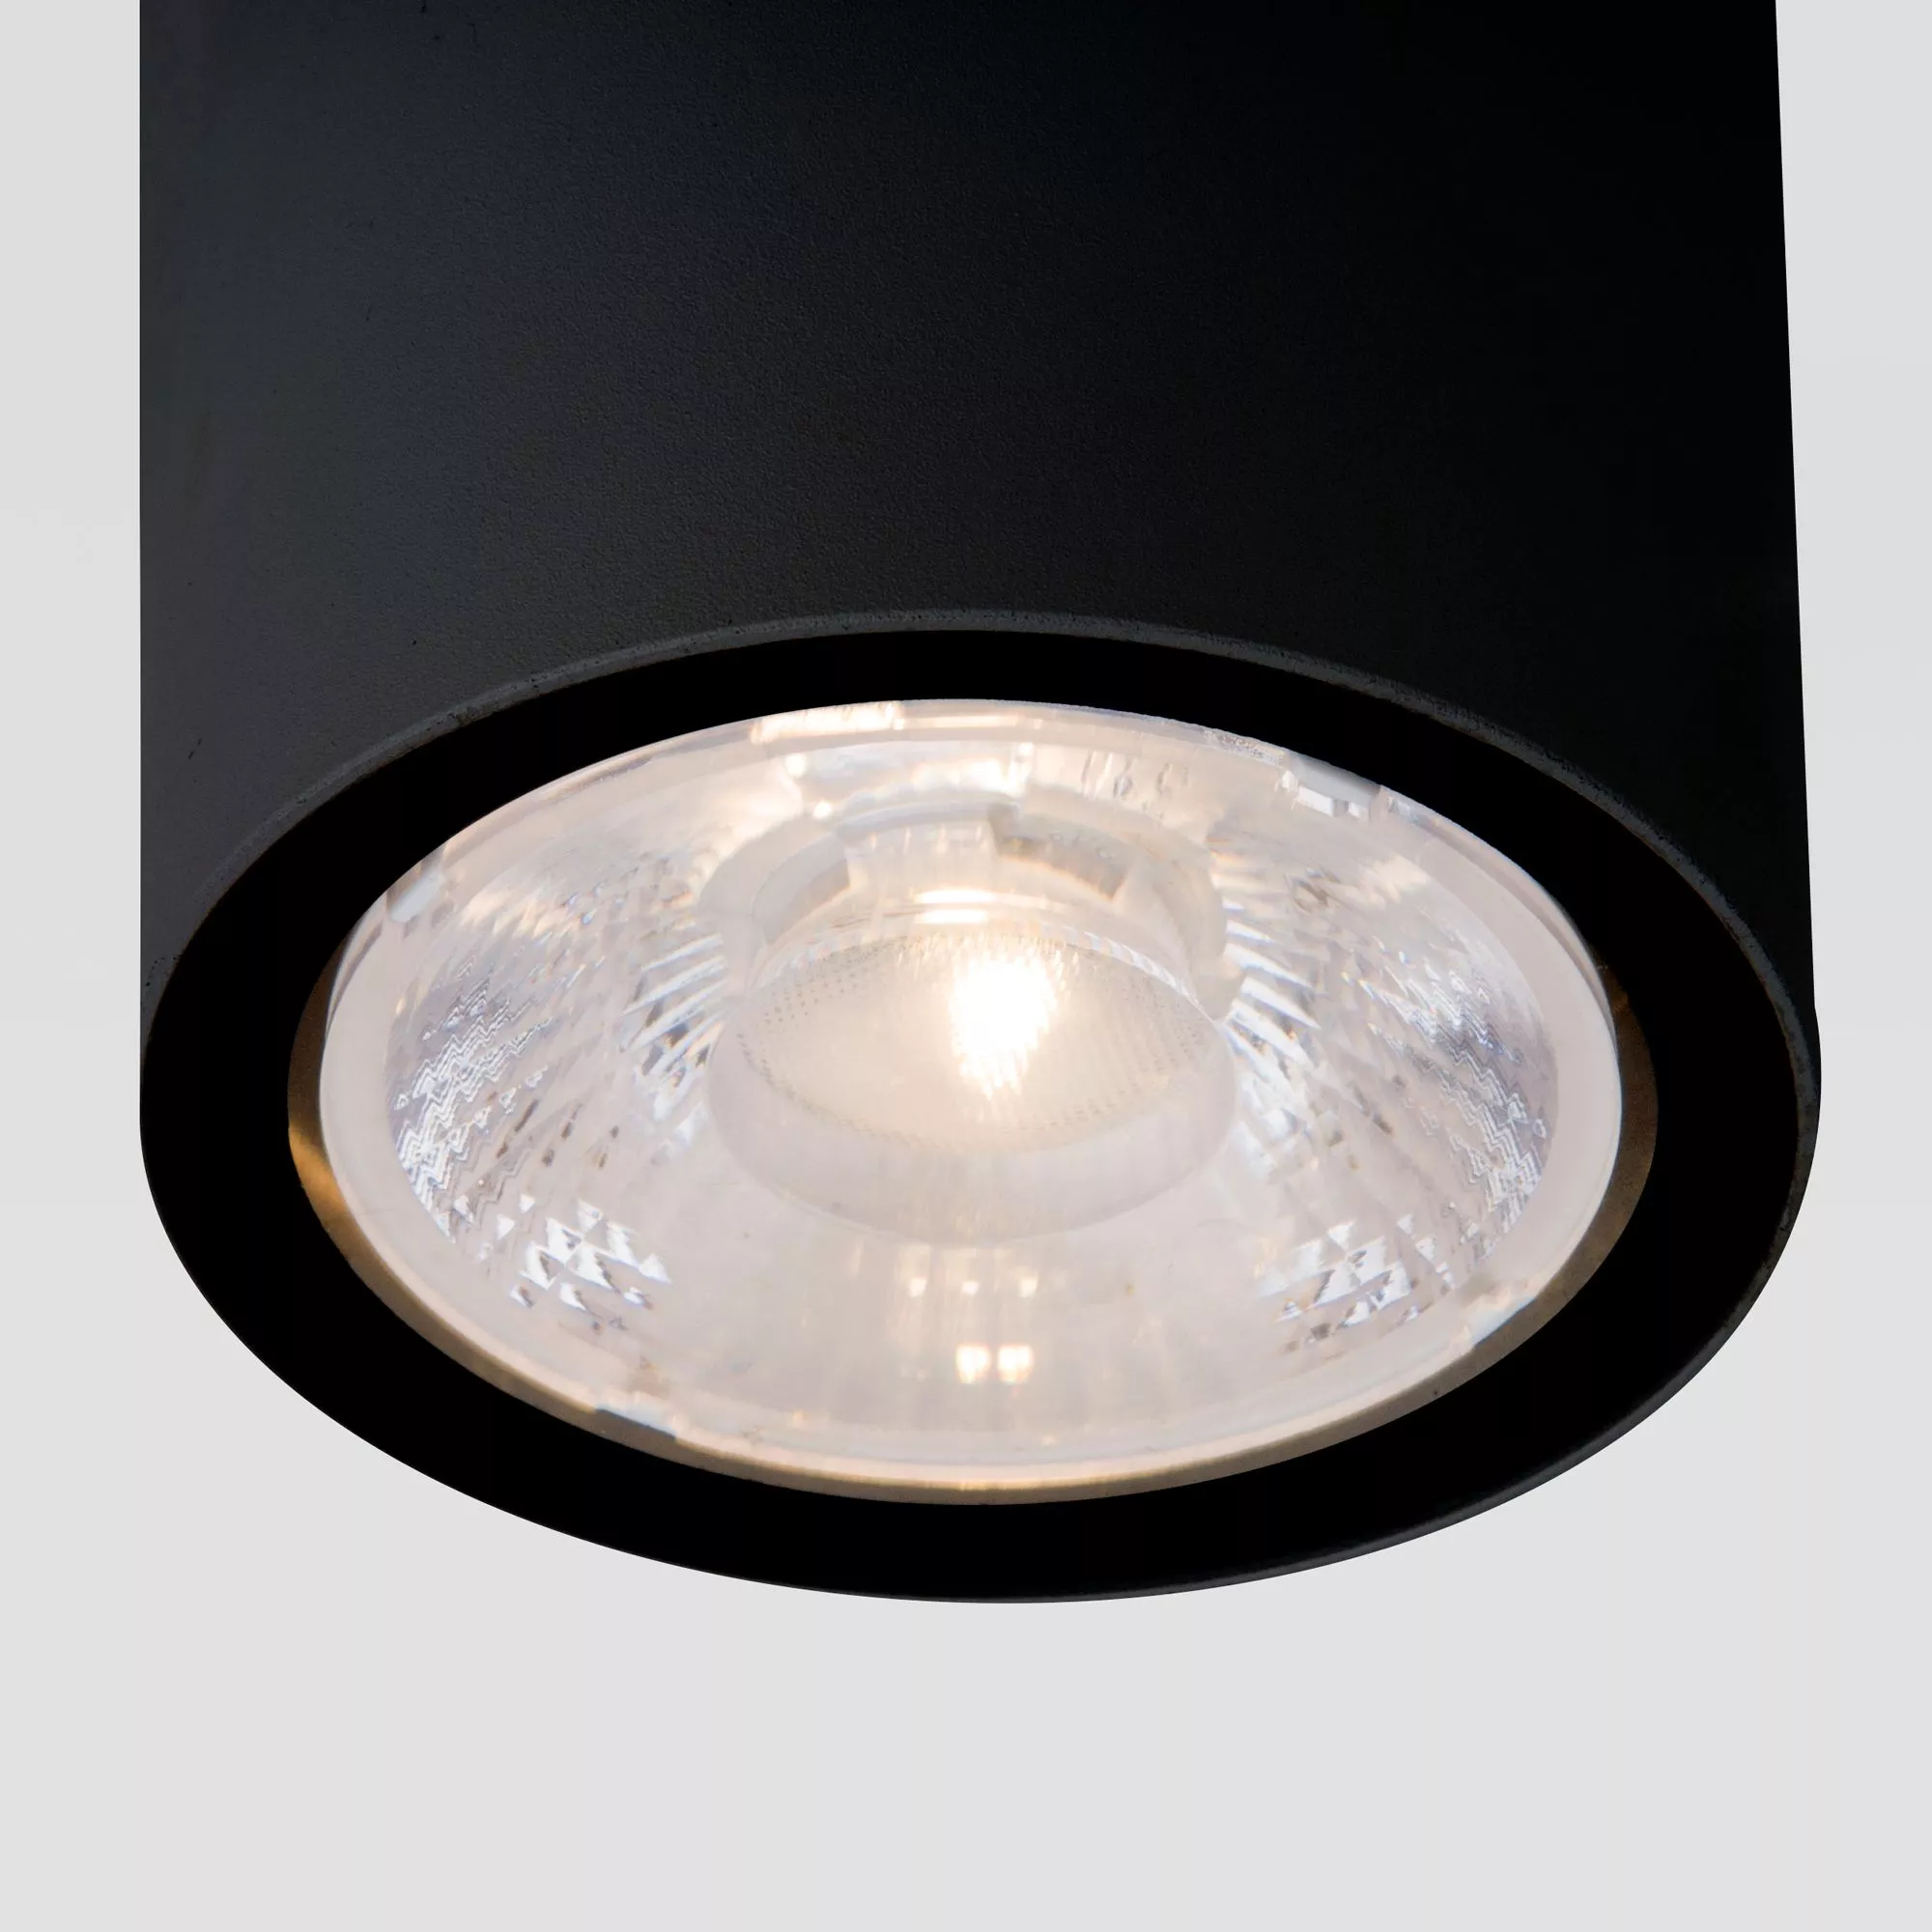 Точечный накладной светильник Elektrostandard Light LED 35131/H черный